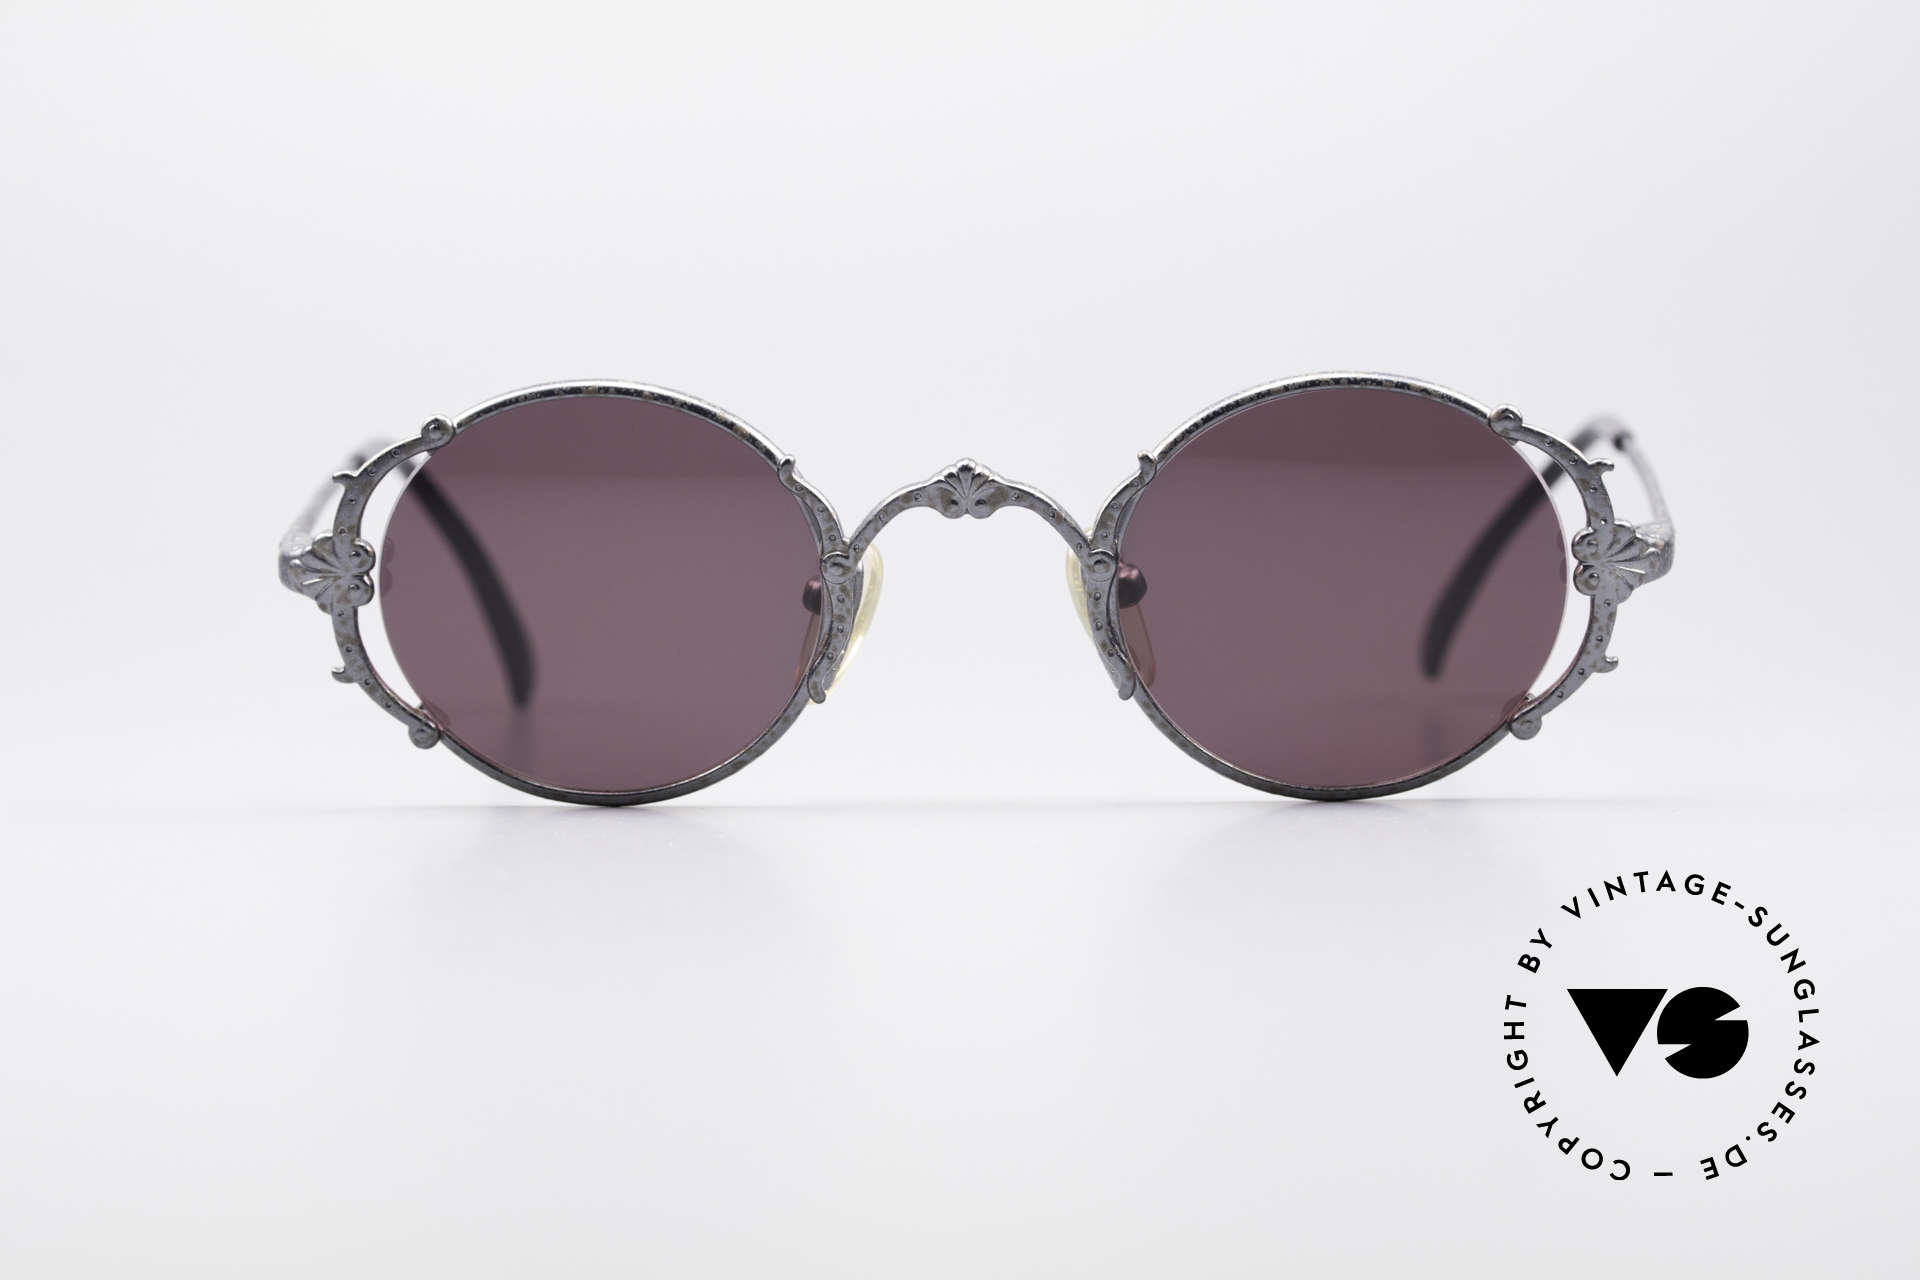 Sunglasses Jean Paul Gaultier 56-4176 Baroque Sunglasses Louis XIV | Vintage Sunglasses